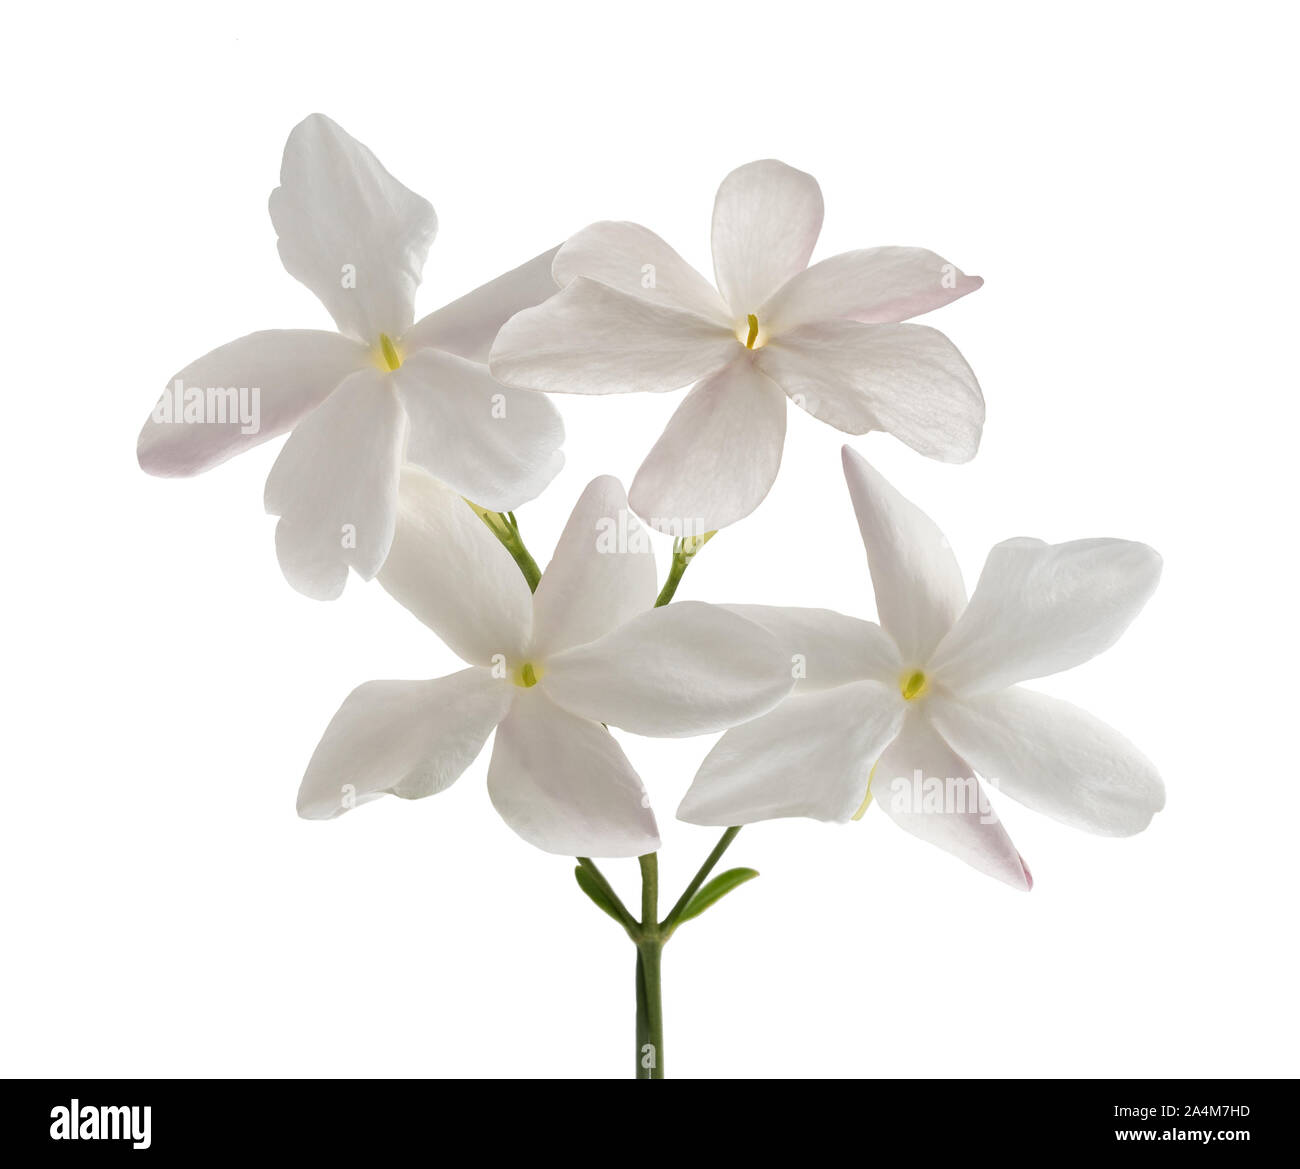 Jasmine flowers isolated on white background Stock Photo